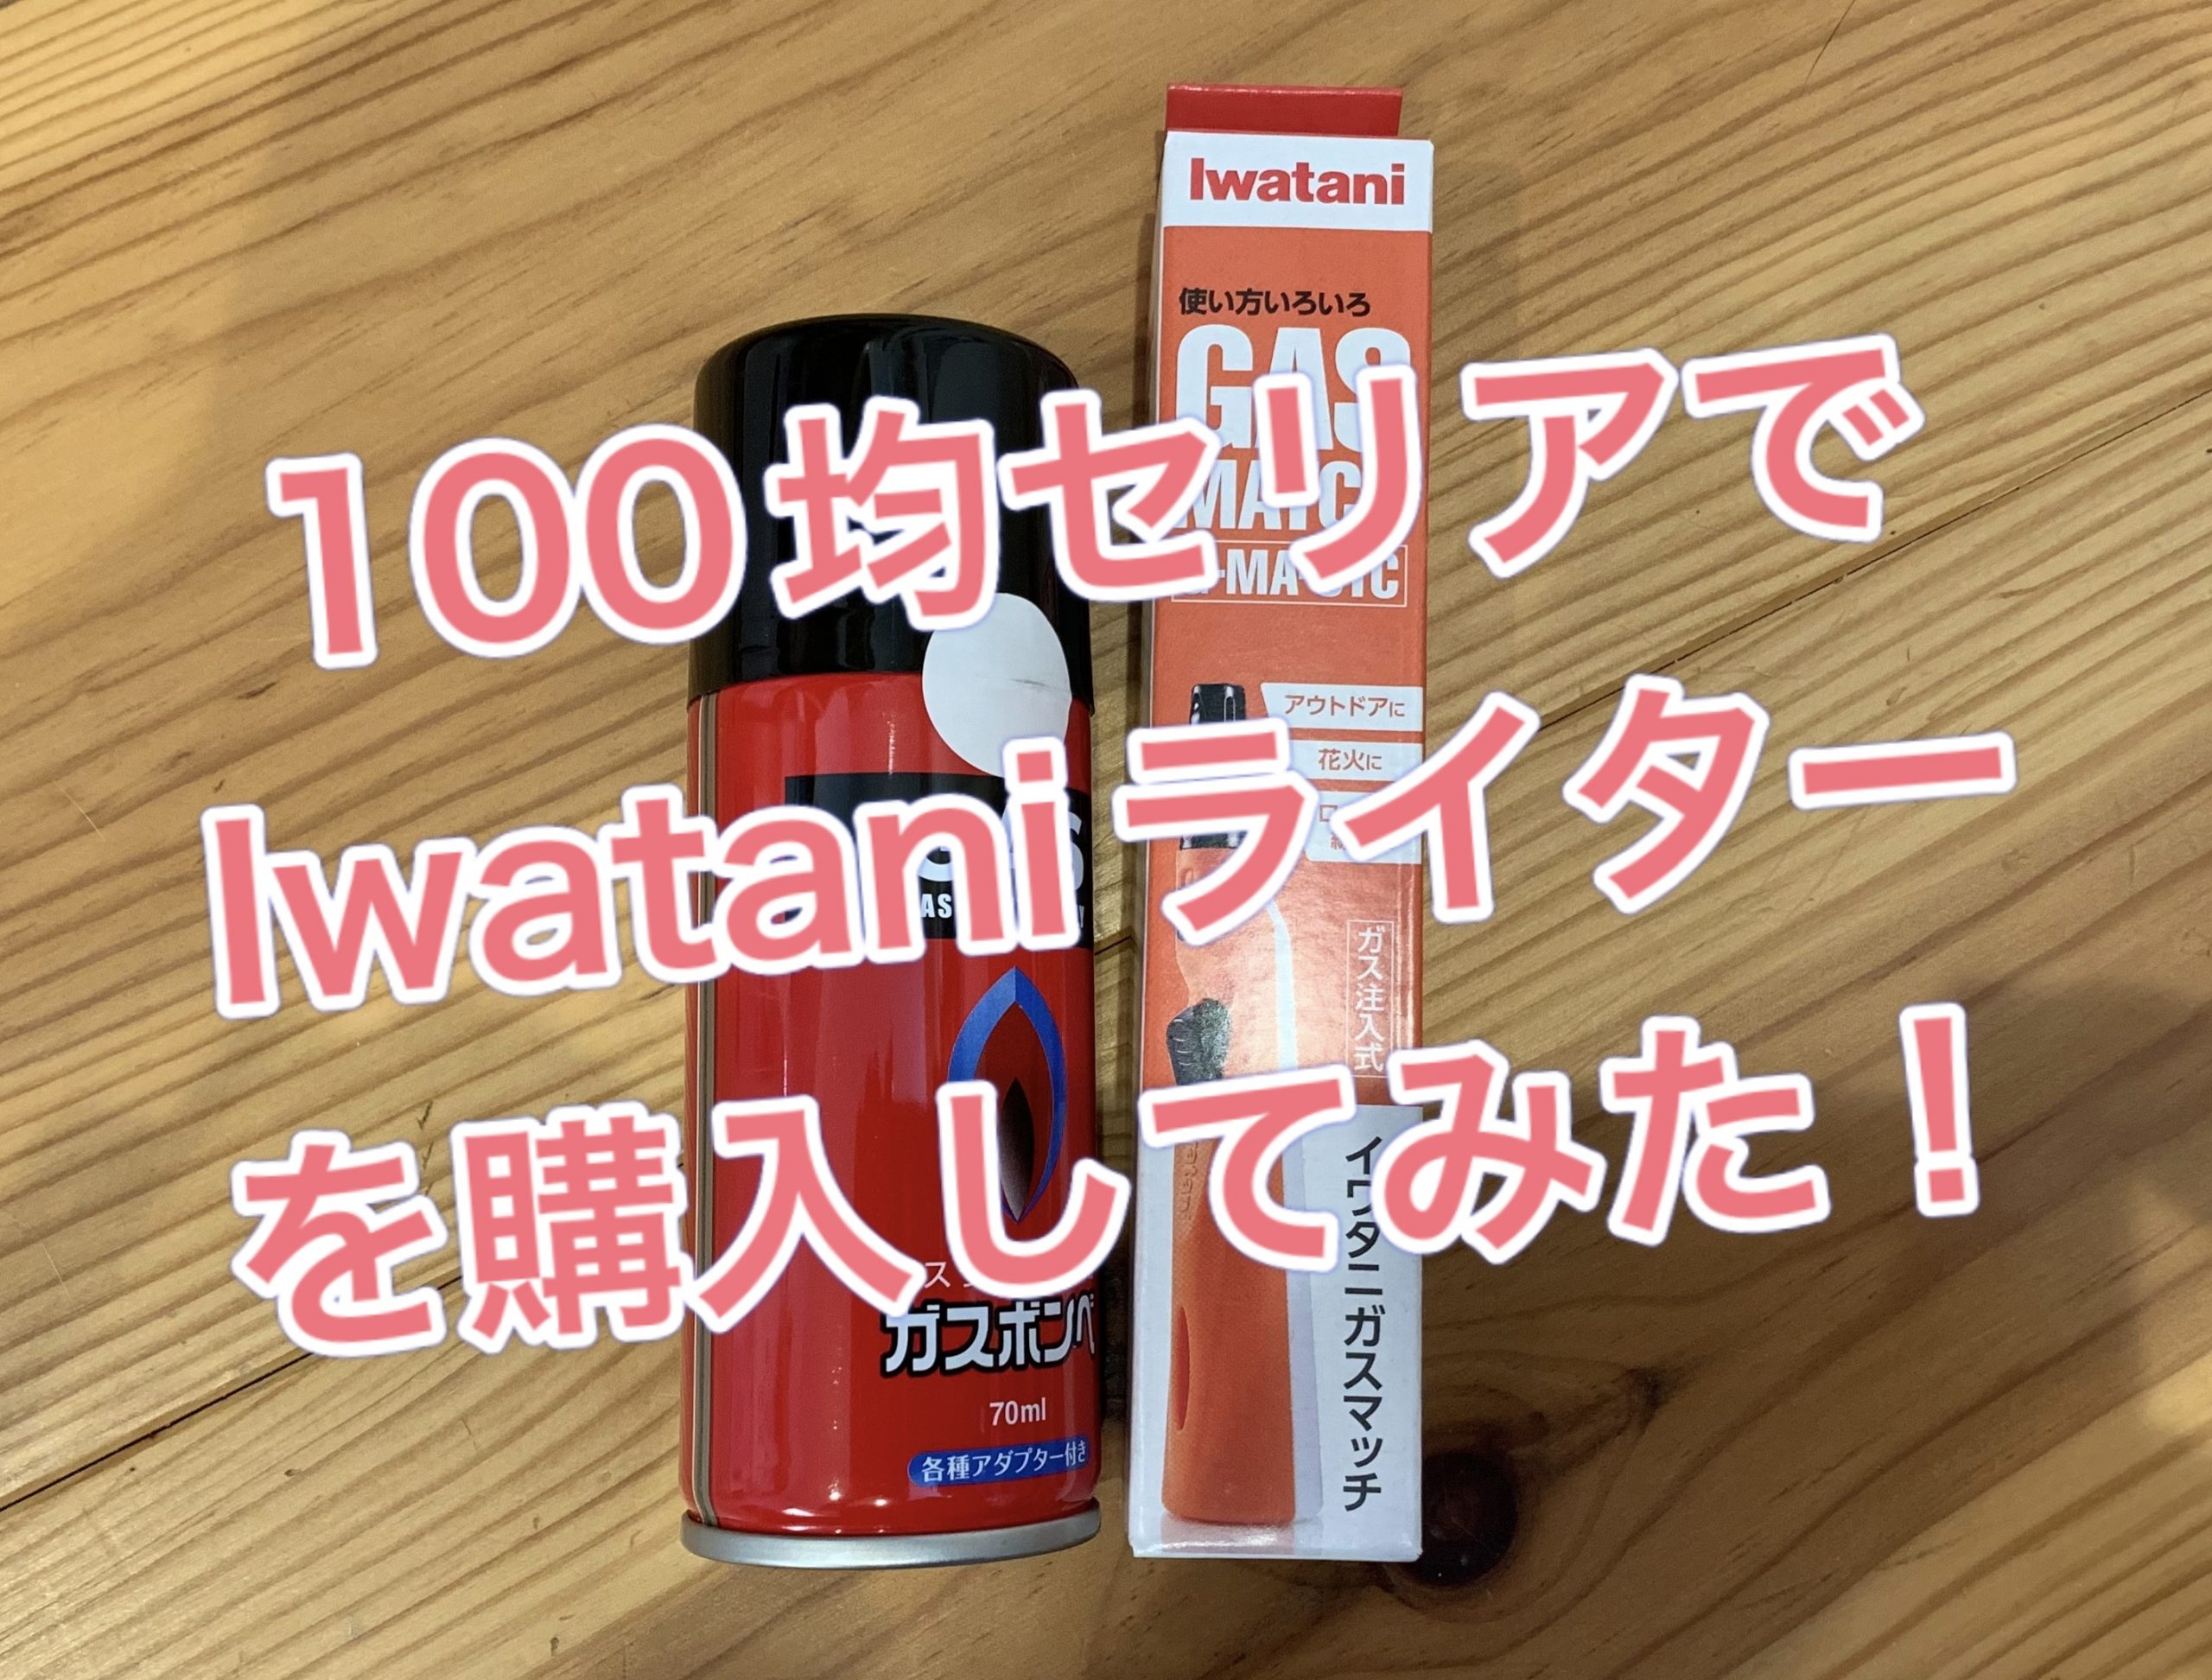 SeriaでIwatani110円ライターを購入した！！ イメージ画像